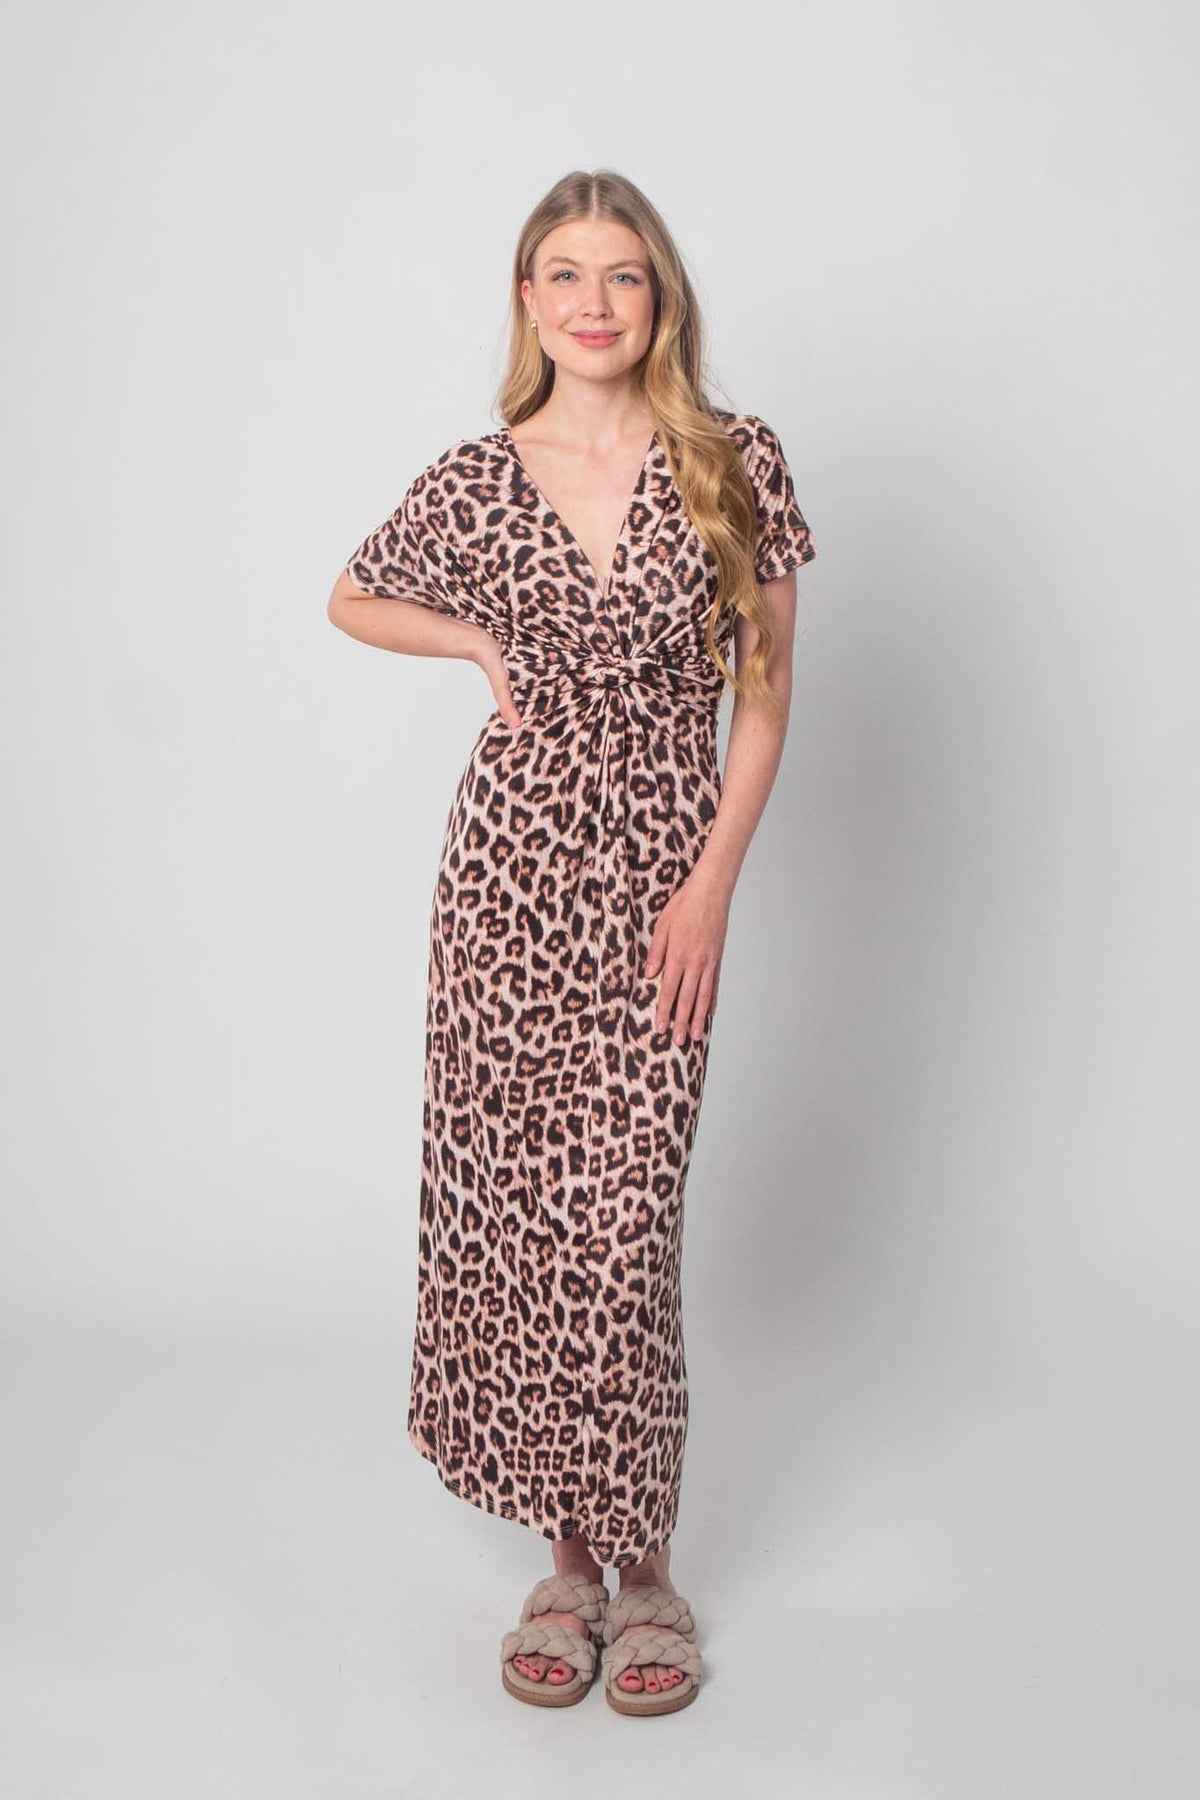 Kleid mit Leoparden Print - Beige/Schwarz